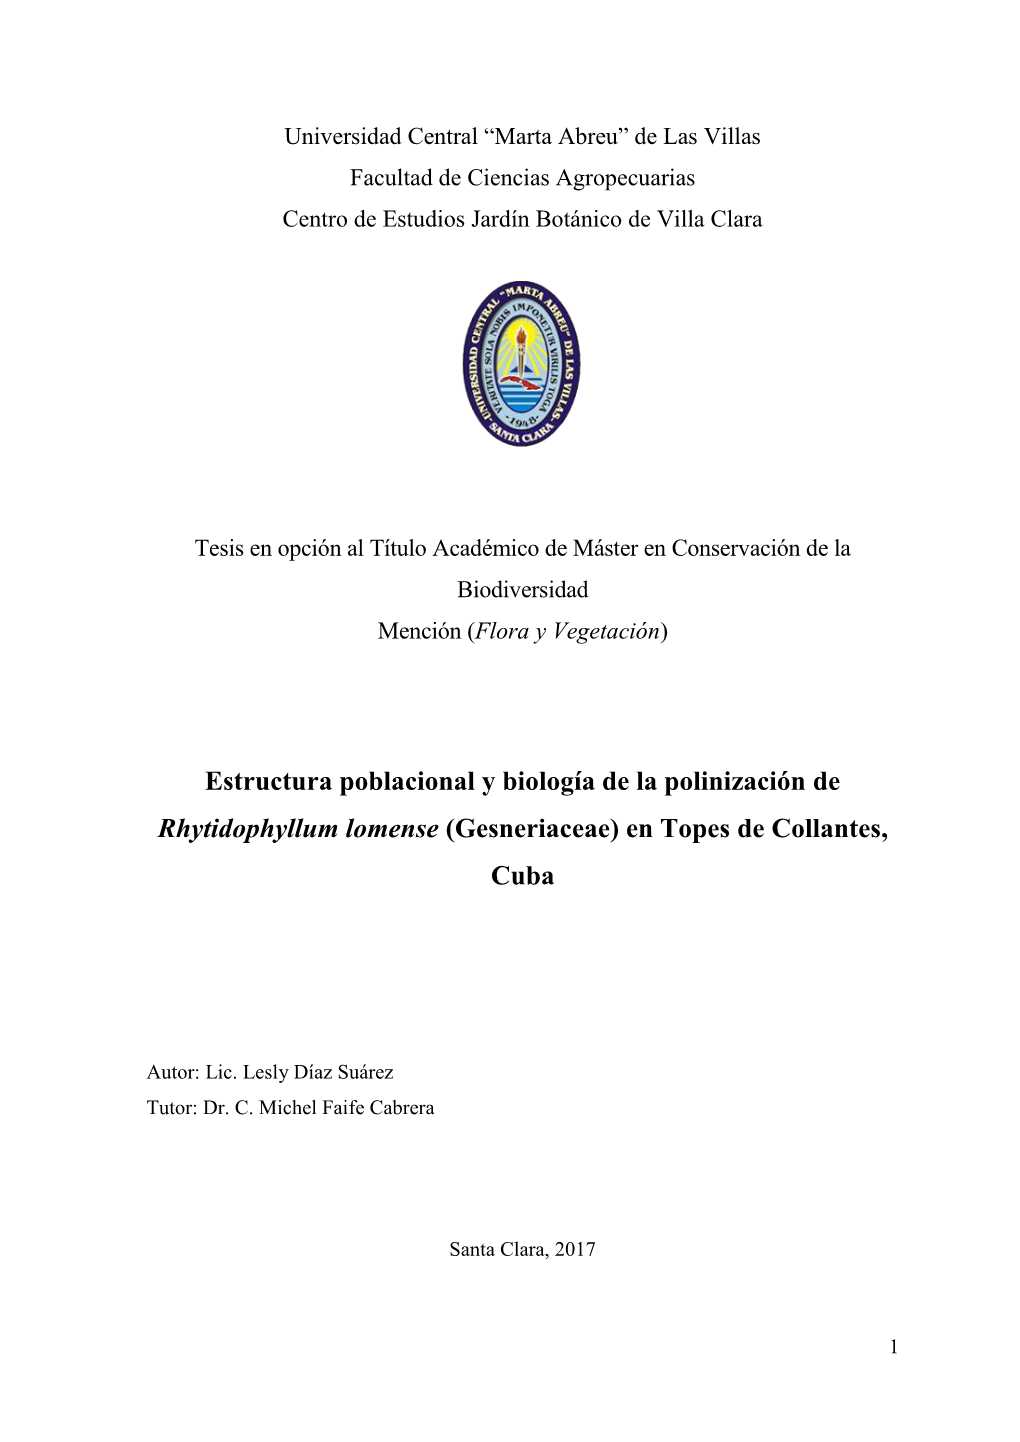 Estructura Poblacional Y Biología De La Polinización De Rhytidophyllum Lomense (Gesneriaceae) En Topes De Collantes, Cuba